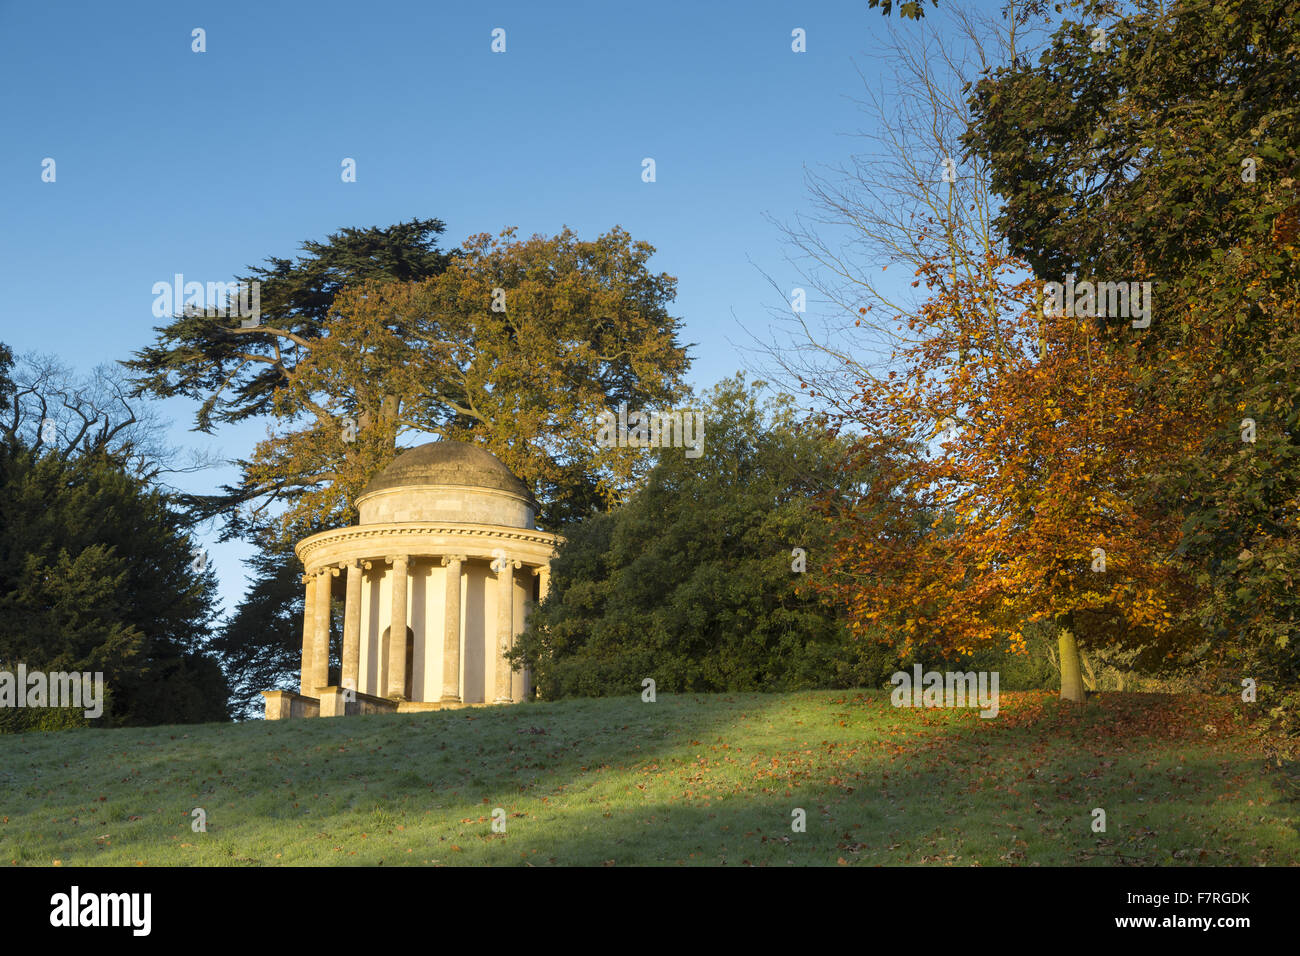 Il Tempio di antiche virtù in autunno a Stowe, Buckinghamshire. Stowe è un giardino paesaggistico con picture-in perfetta opinioni, sentieri tortuosi, passeggiate in riva al lago e templi classici. Foto Stock